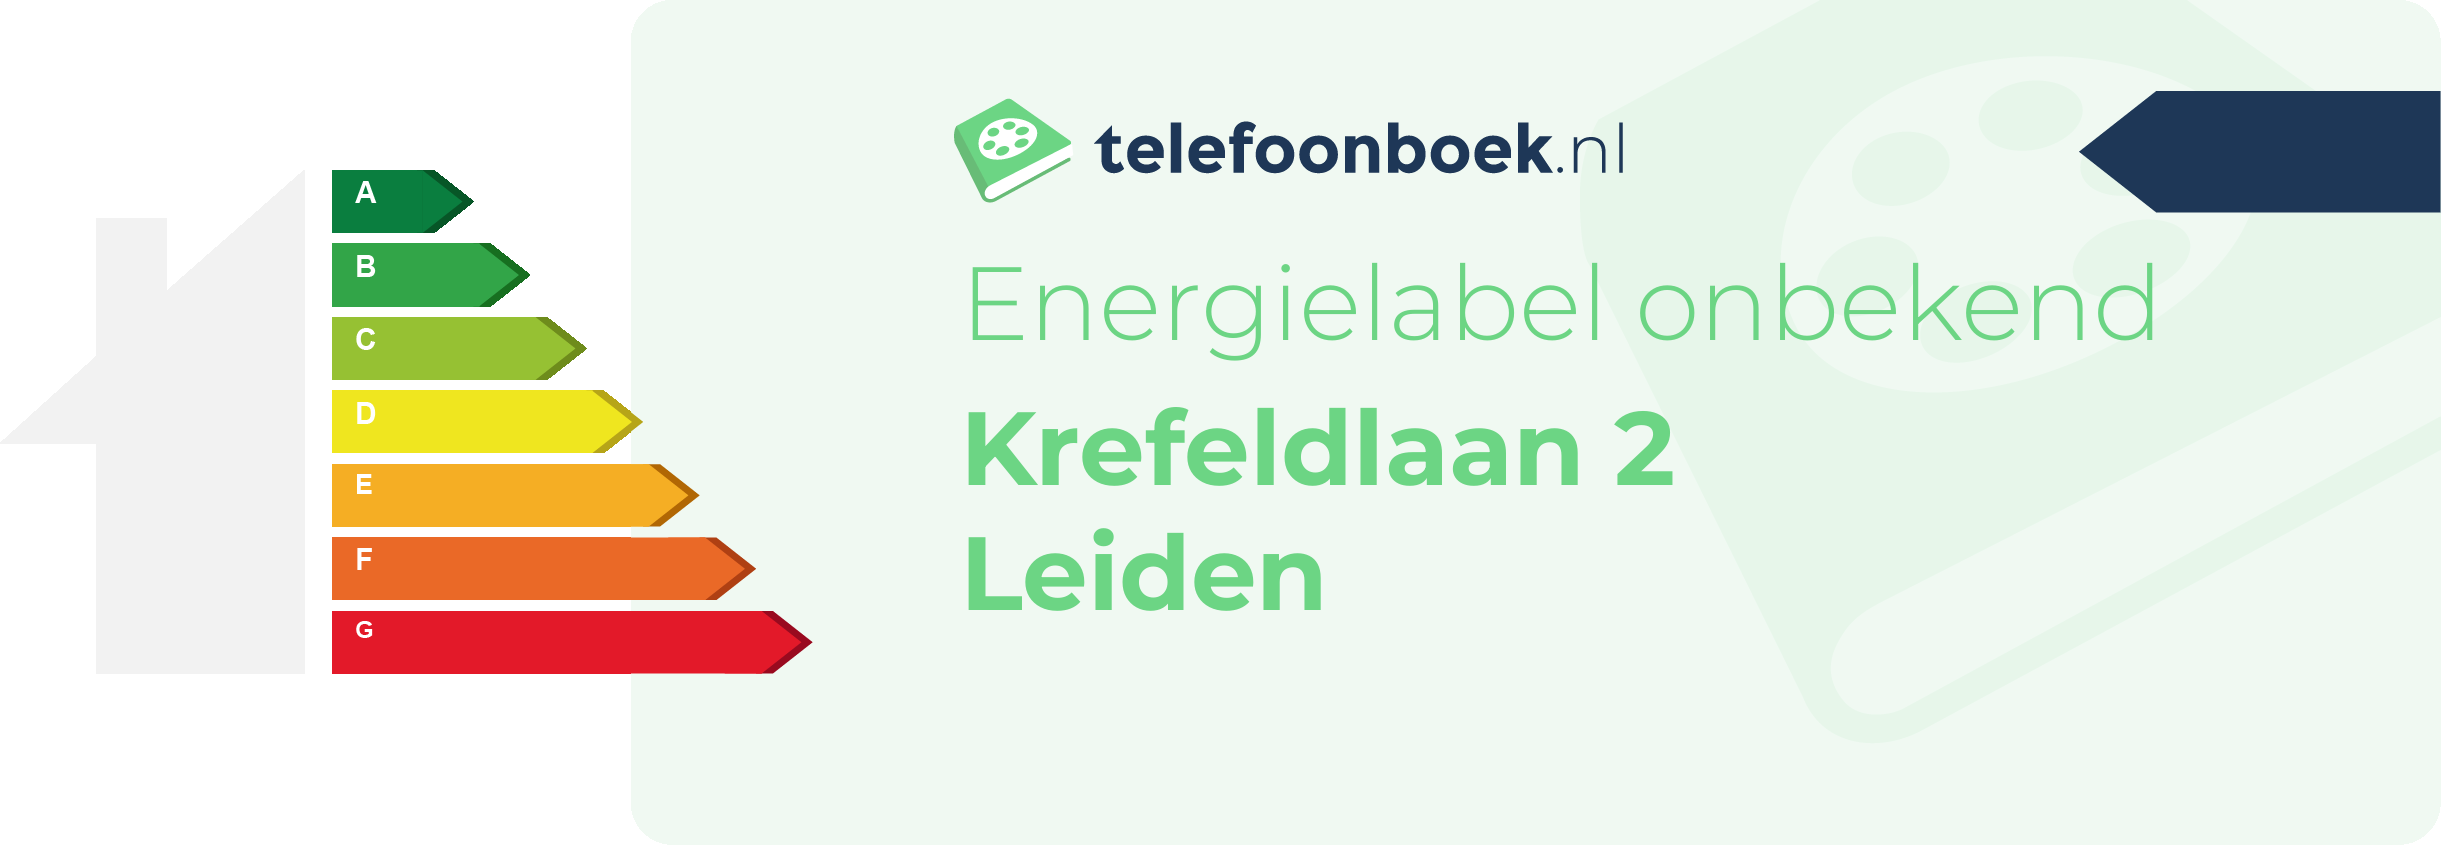 Energielabel Krefeldlaan 2 Leiden